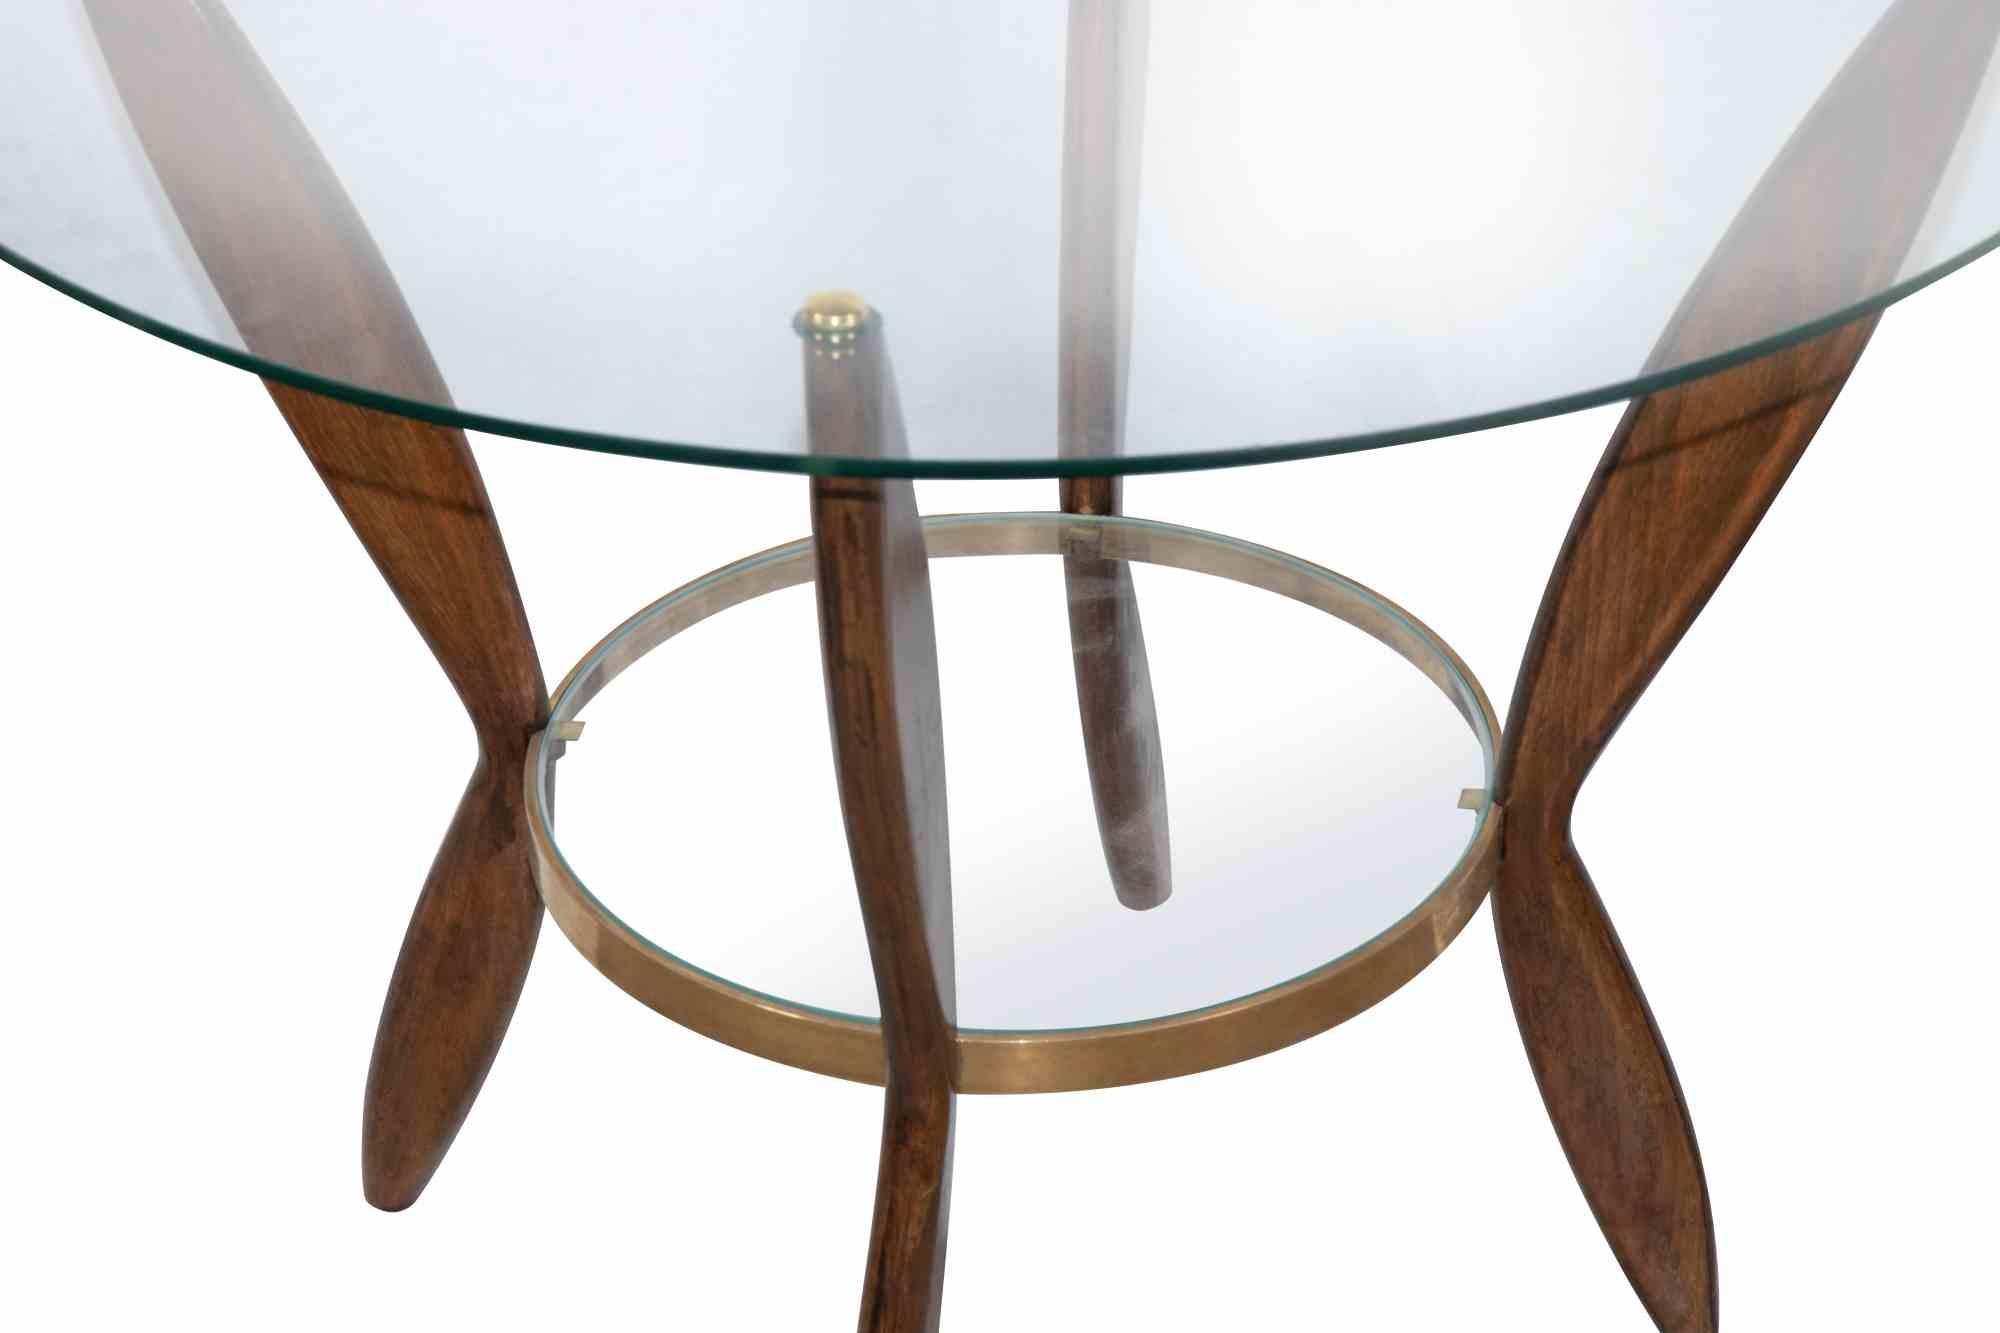 Das Couchtisch-Paar ist ein originelles Design-Möbelstück von Gio Ponti aus den 1950er Jahren.

Schönes Paar Couchtische aus Holz mit Glasplatten und Messingoberflächen. Beech Wood.

Gio Ponti (Mailand 1891 - 1979) ist ein Architekt, Designer und